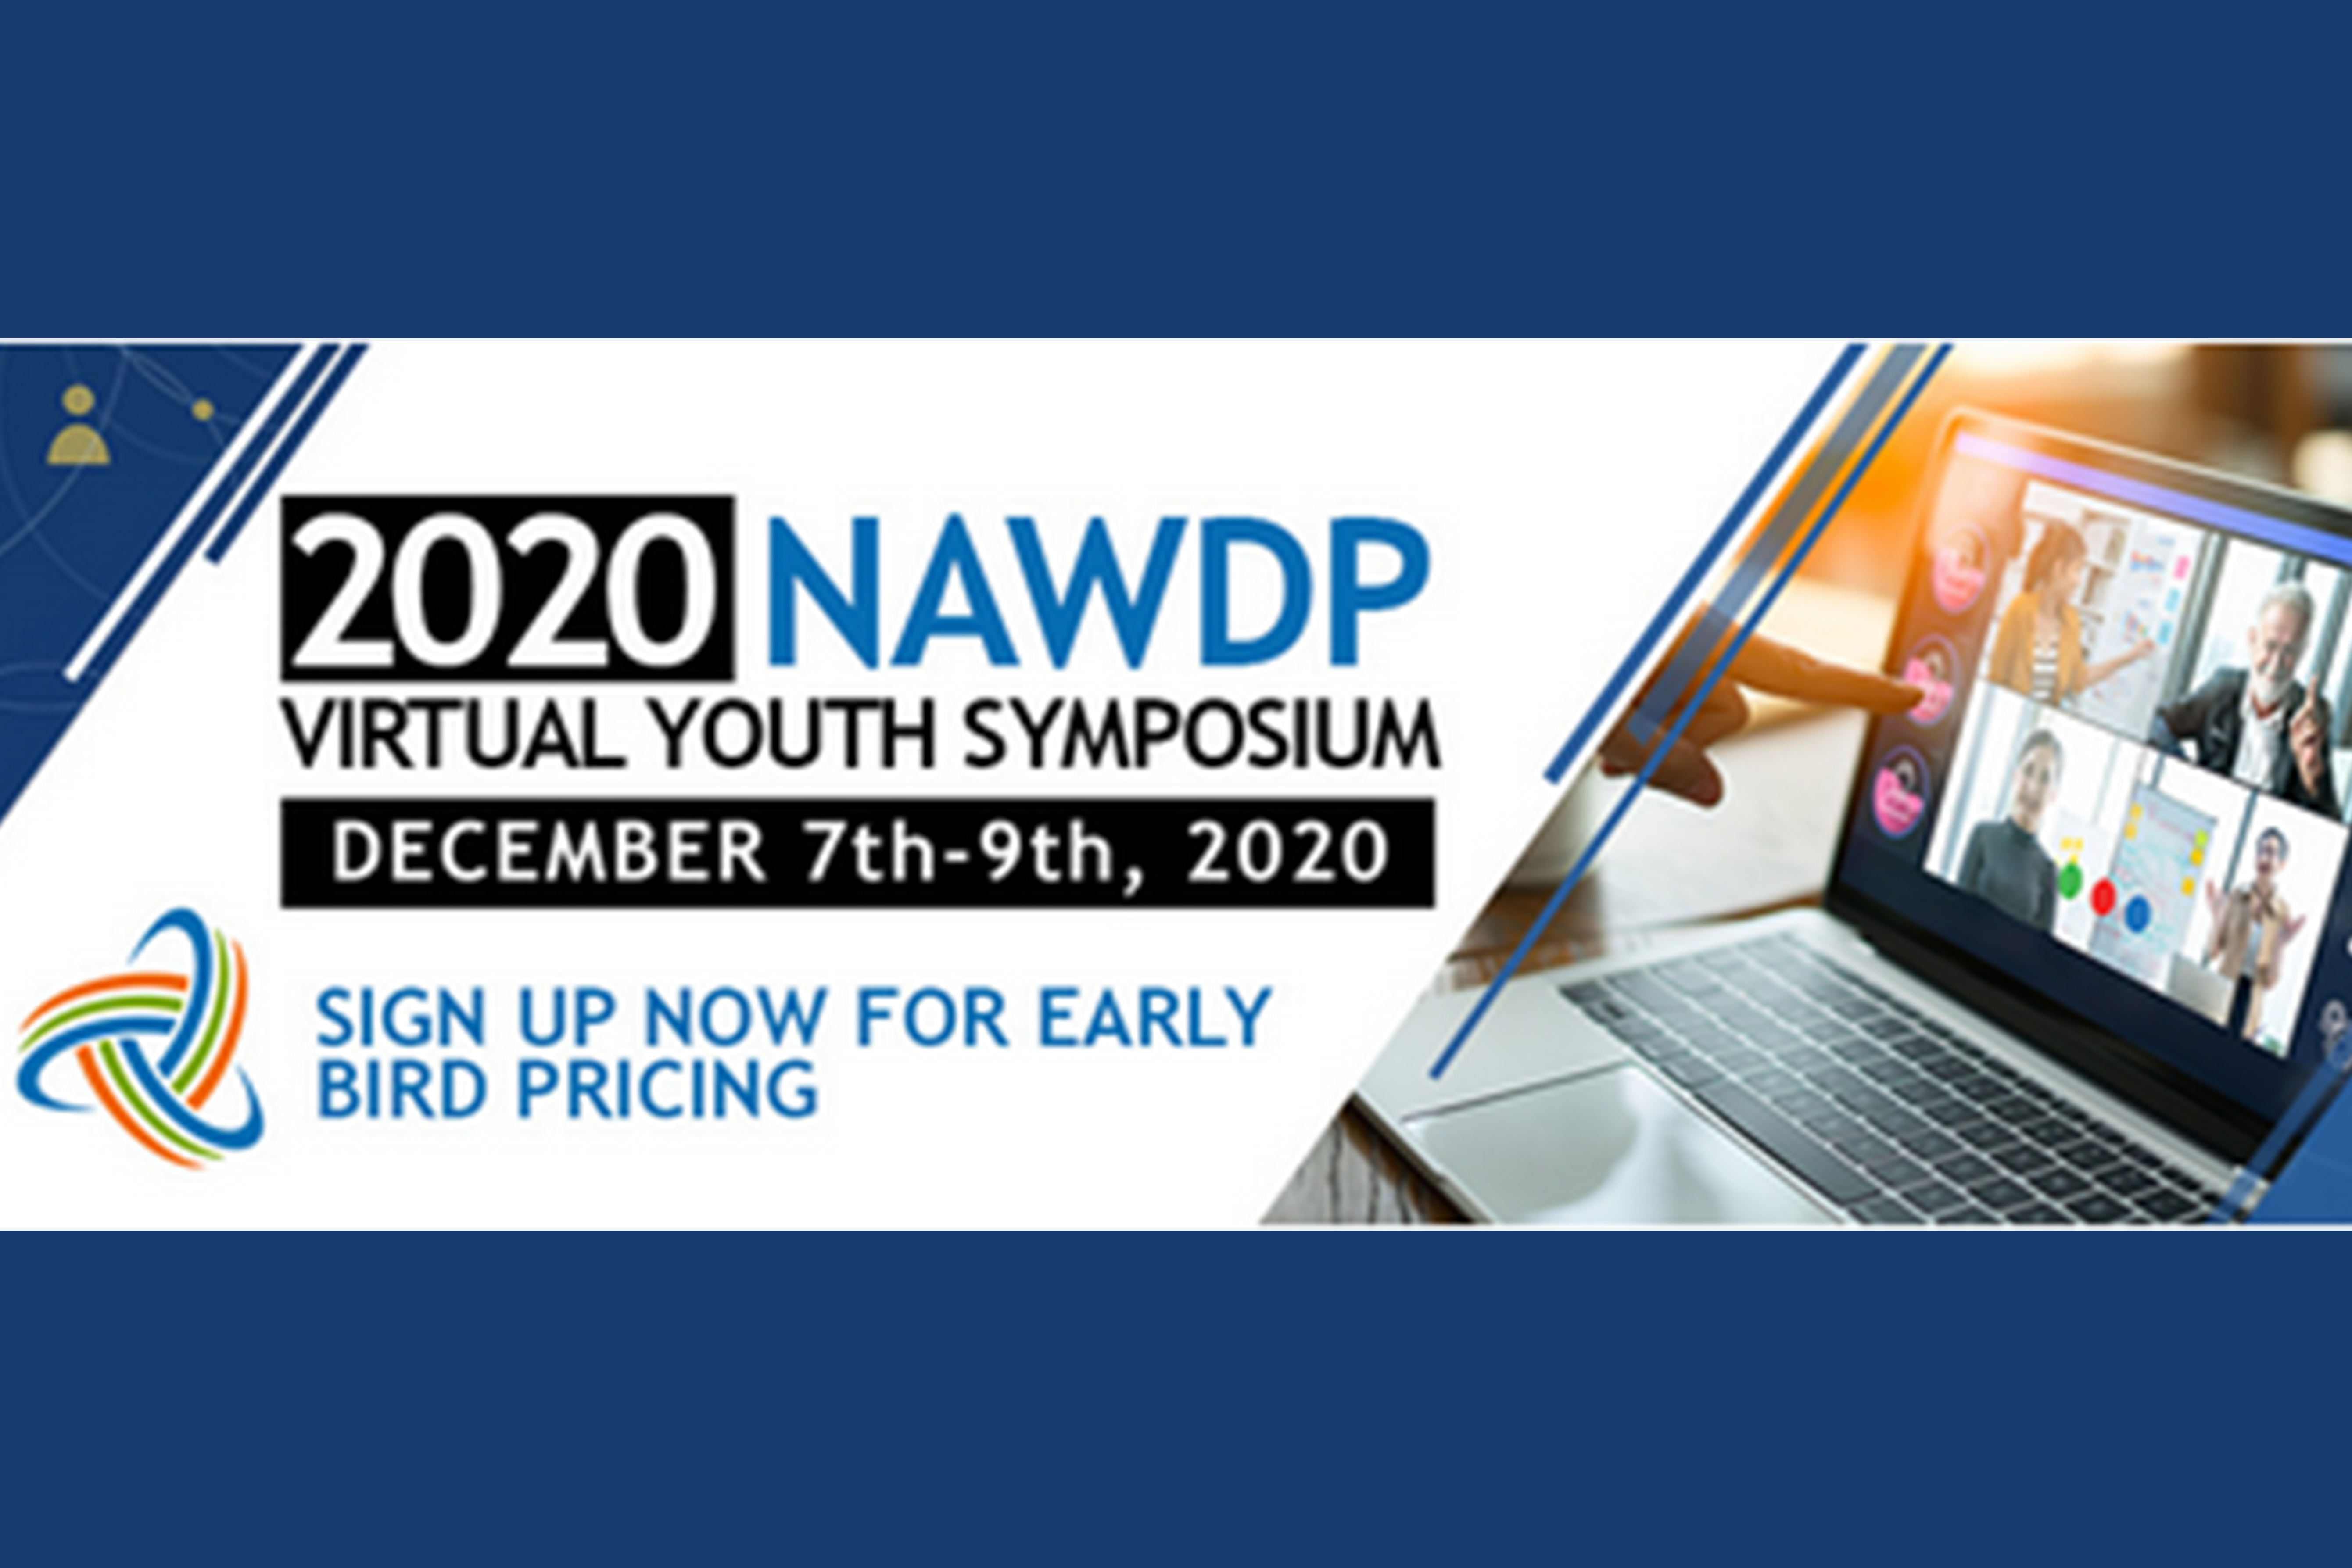 2020 NAWDP-thumbnail.PNG